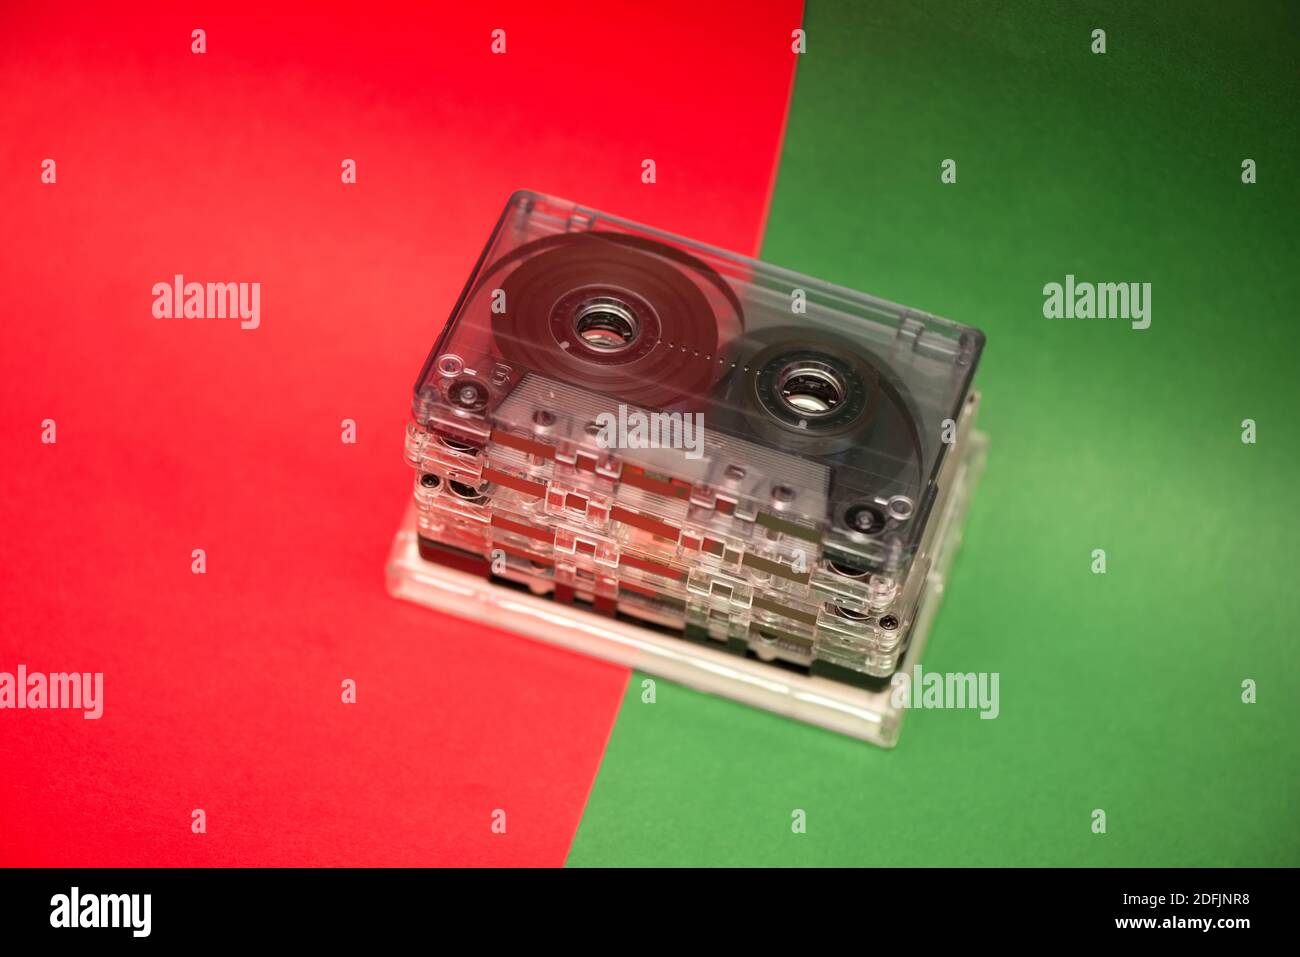 Vintage Cassette Estéreo Pletina Grabadora O Reproductor De Fotos,  retratos, imágenes y fotografía de archivo libres de derecho. Image 13103665